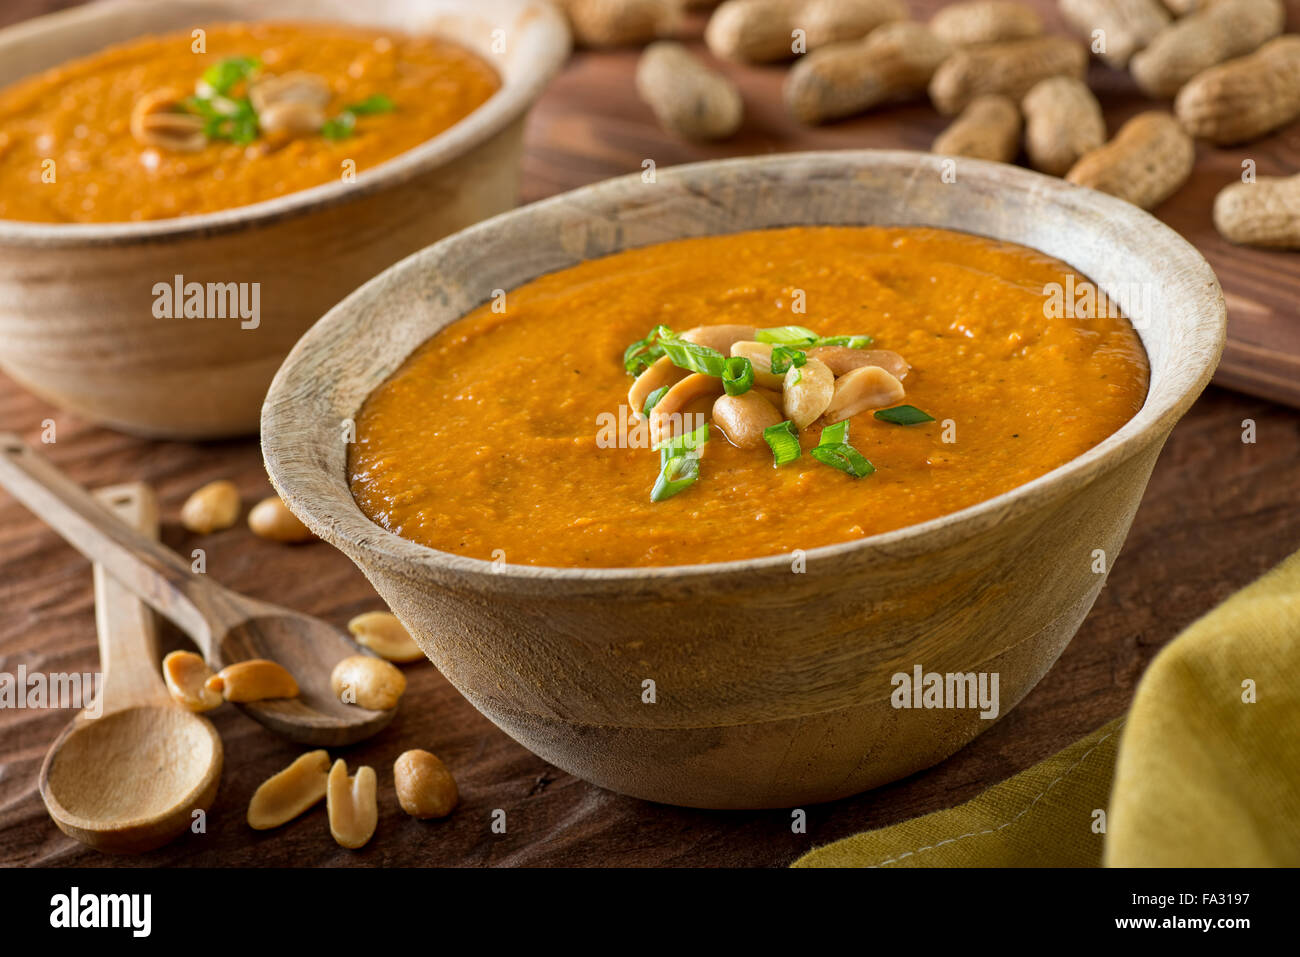 Un délicieux bol de soupe d'arachide africaine fait maison avec de l'oignon vert en garniture. Banque D'Images